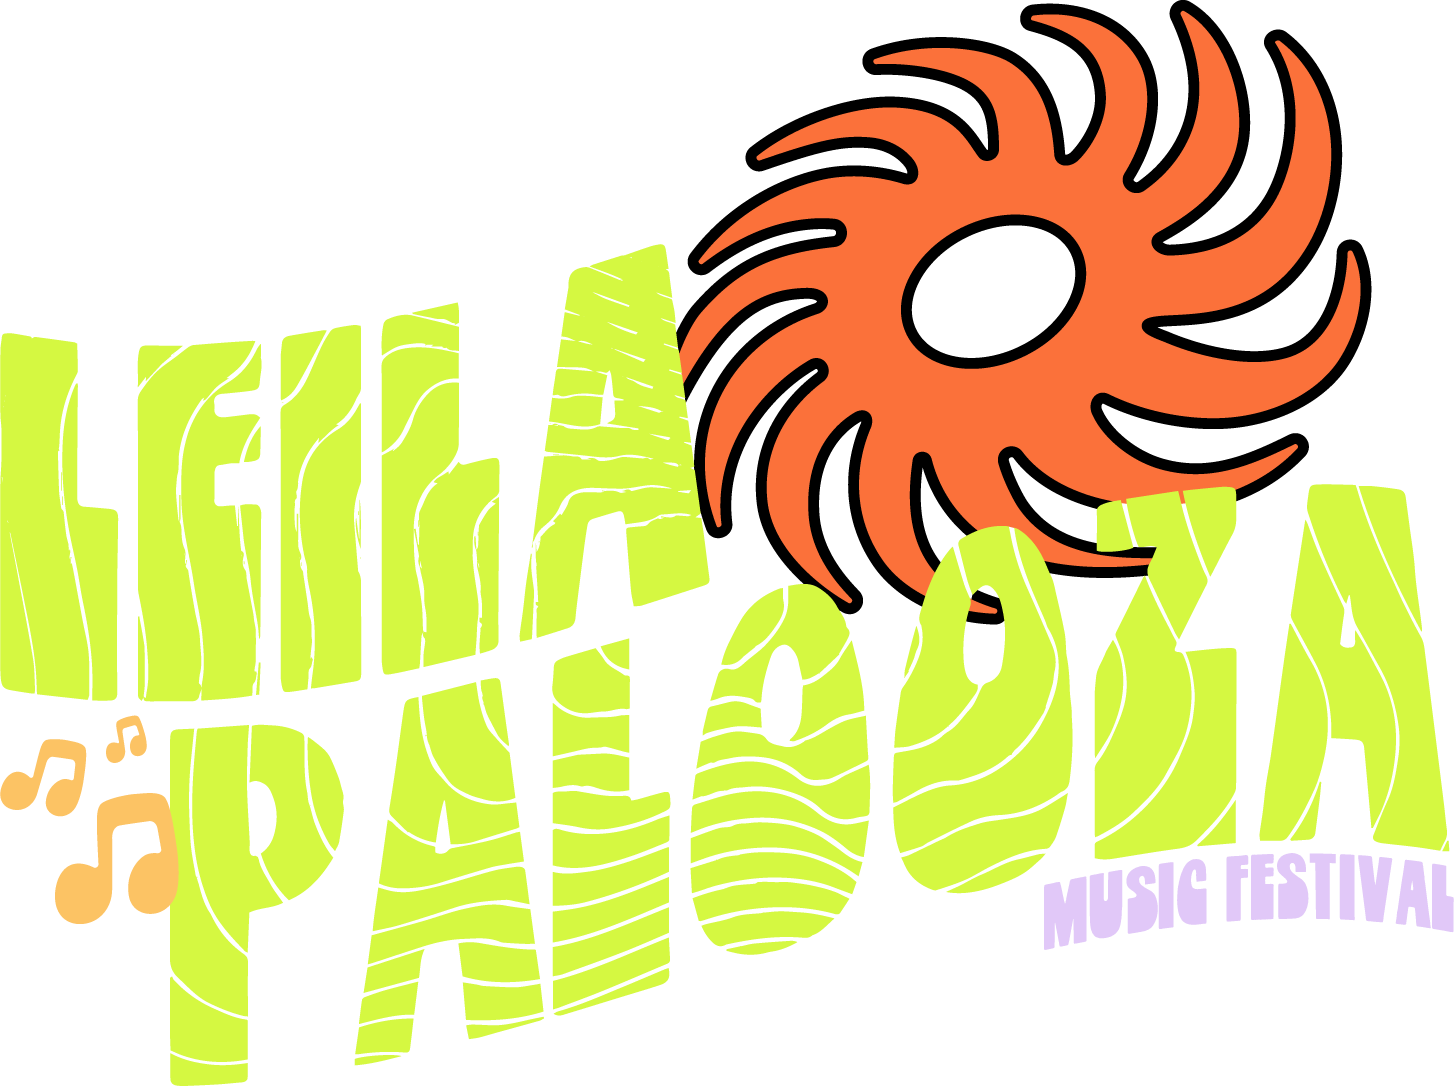 2021 Leilapalooza